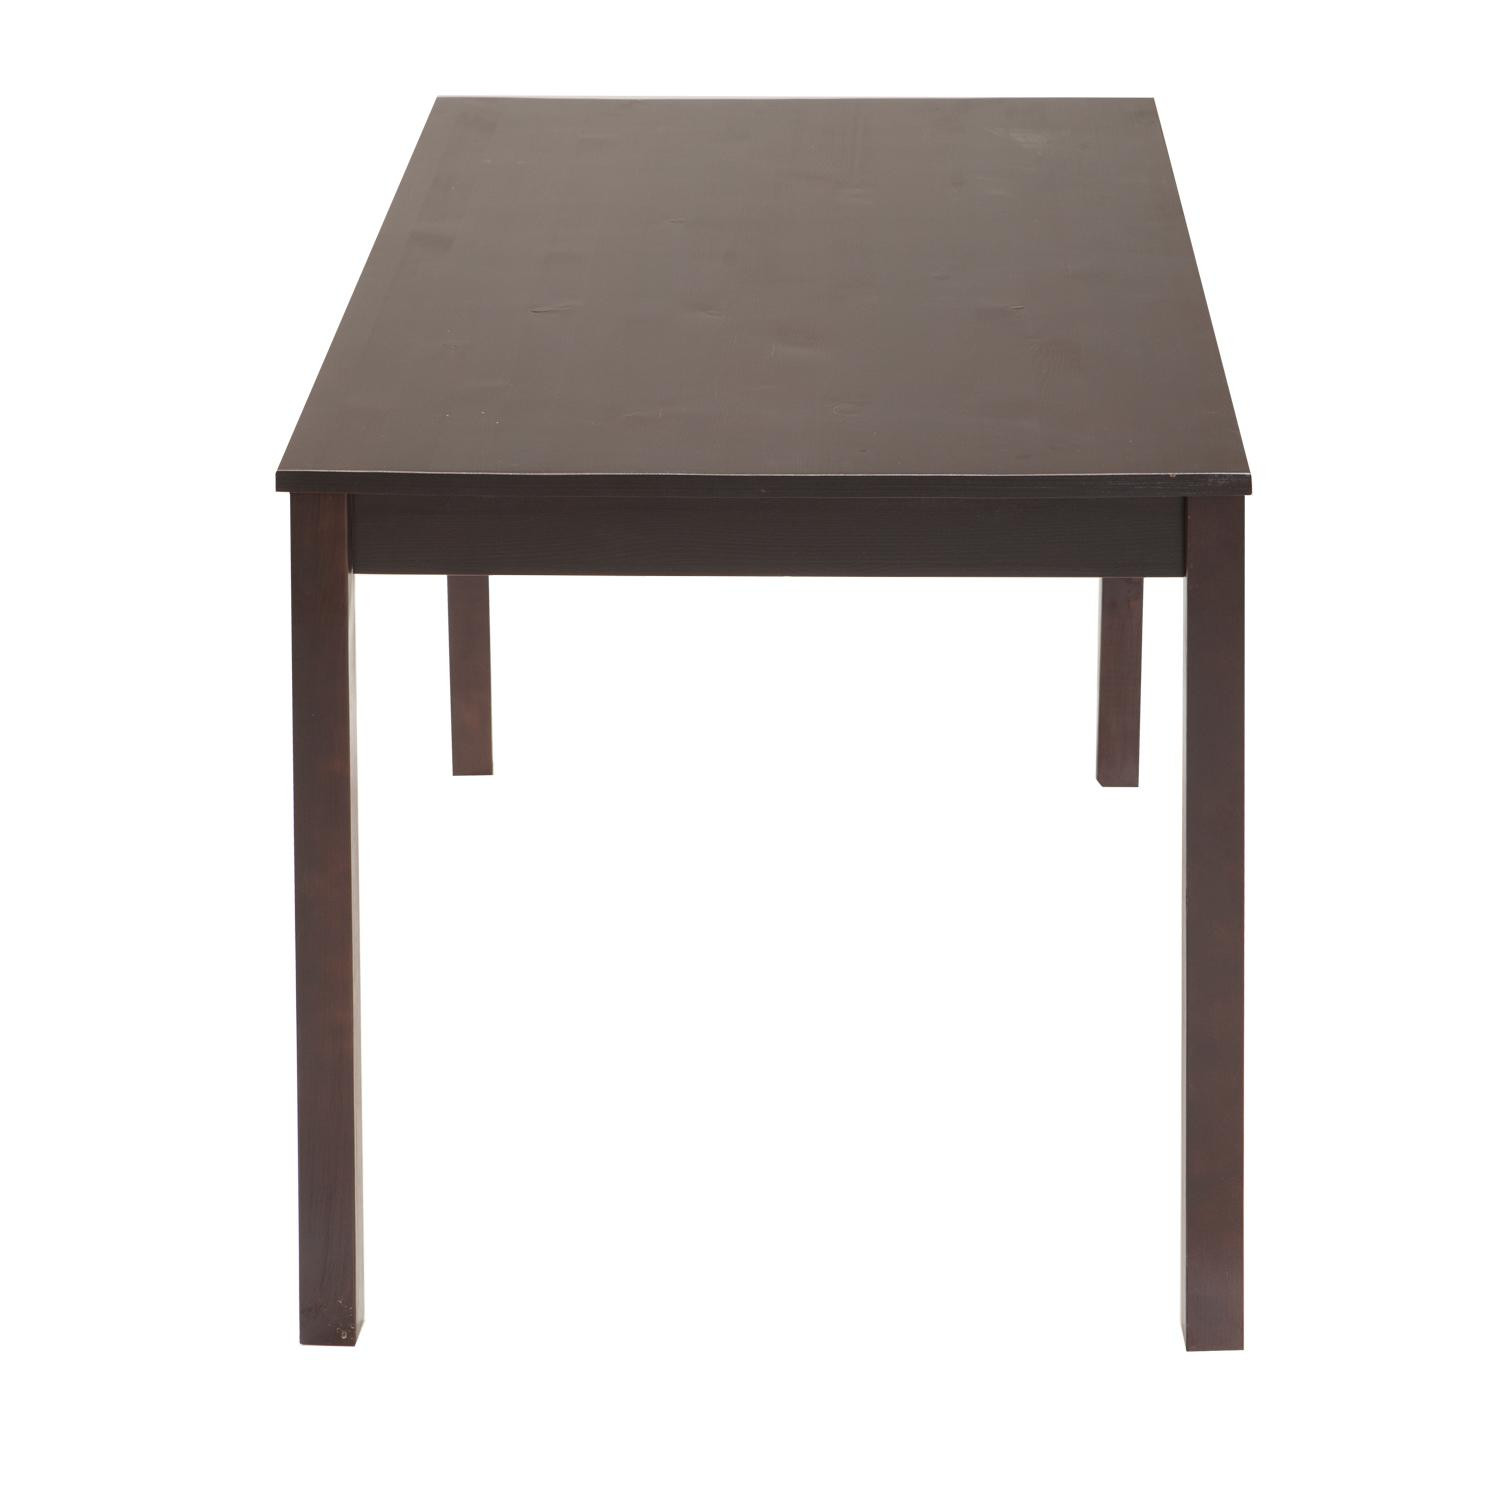 IDEA обеденный стол 8848 темно-коричневый